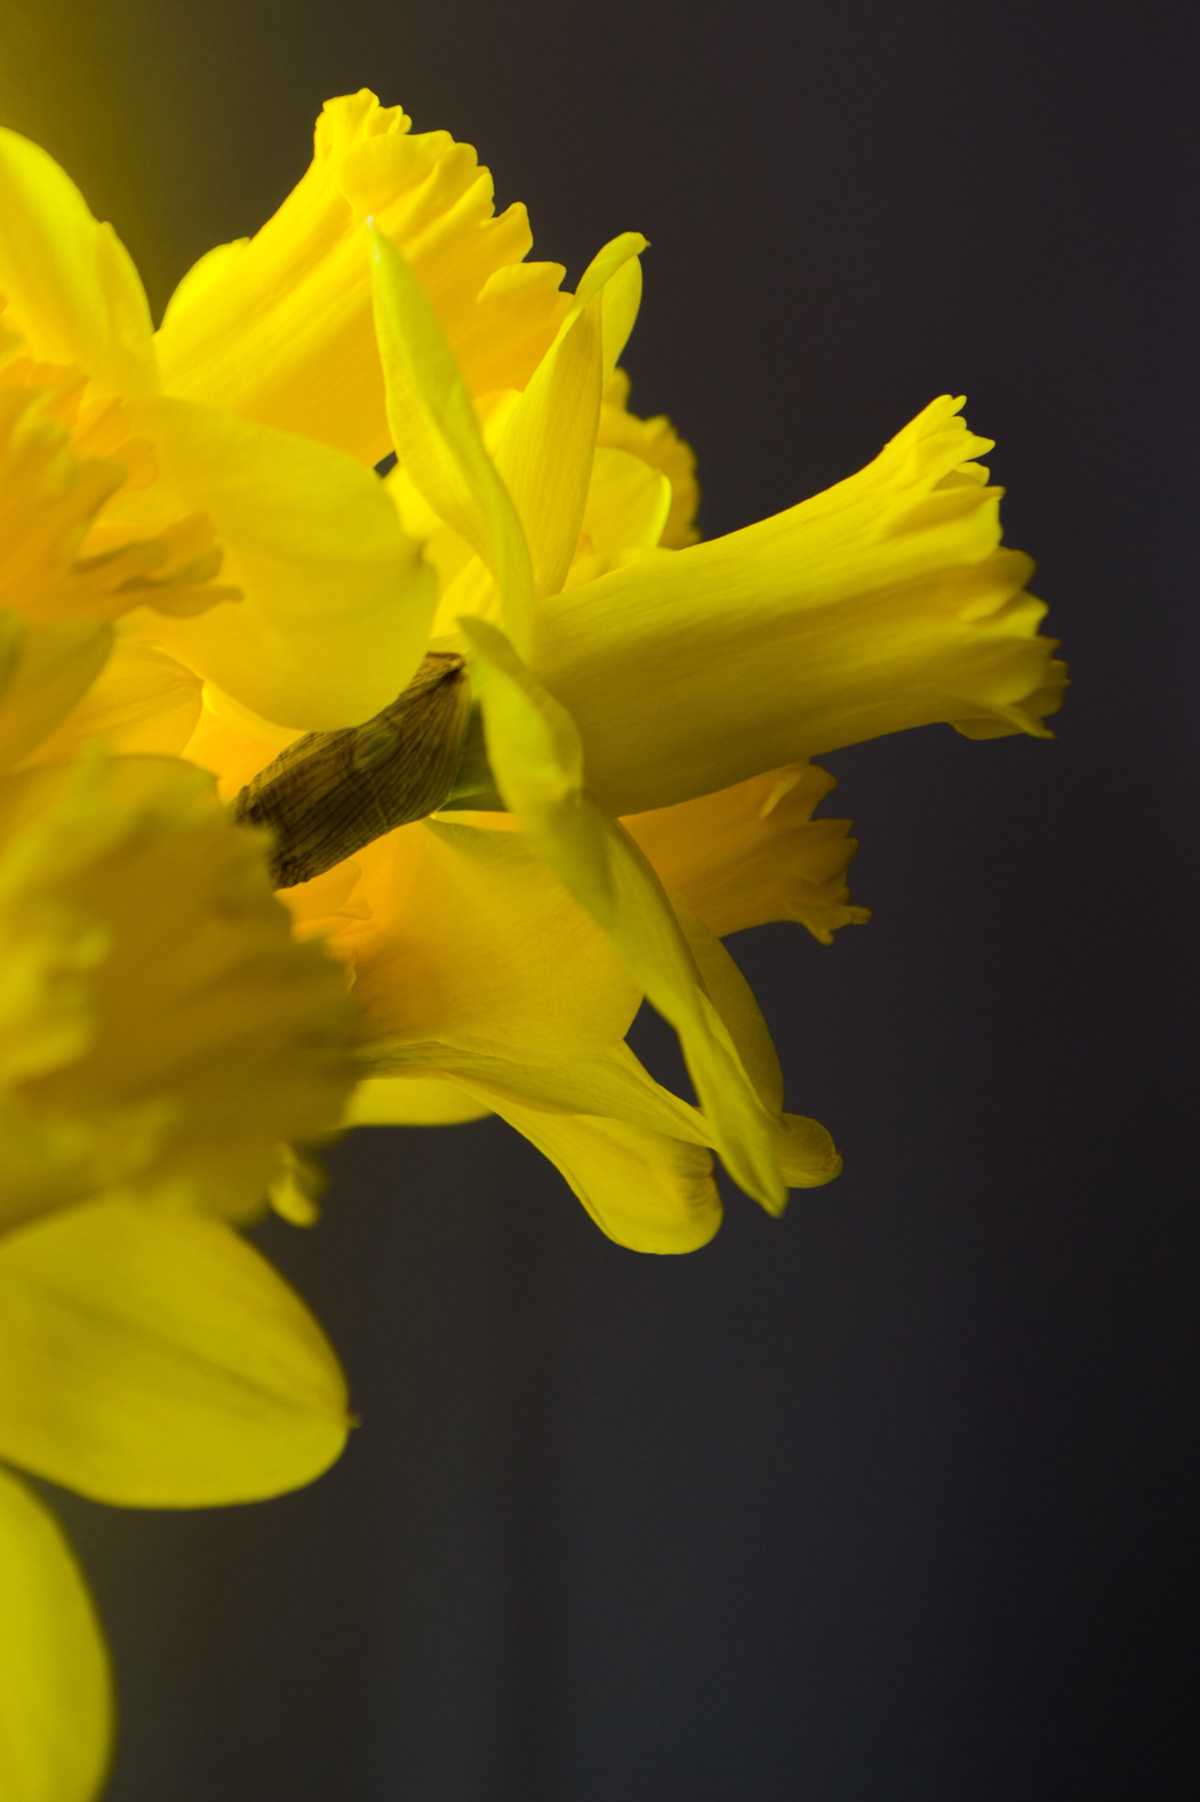 daffodils spring daffodils yellow daffodil